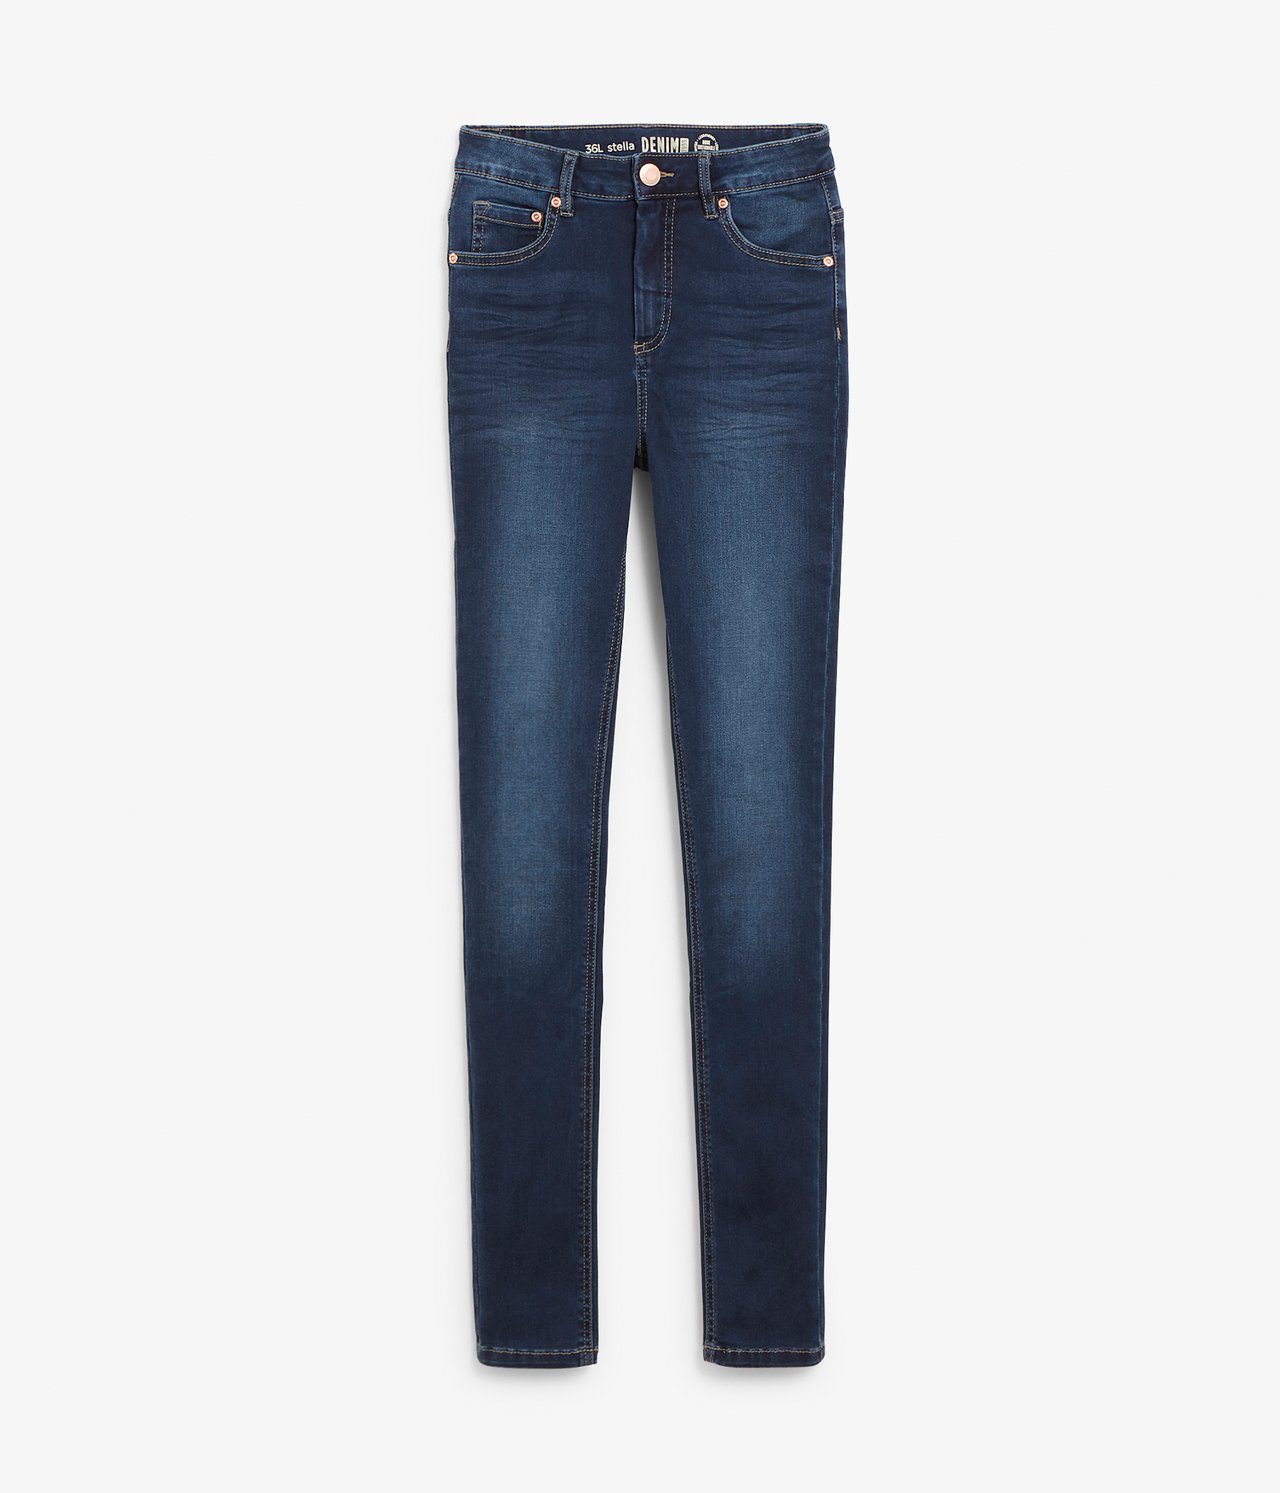 Super slim jeans extra long leg - Mørk denim - 6